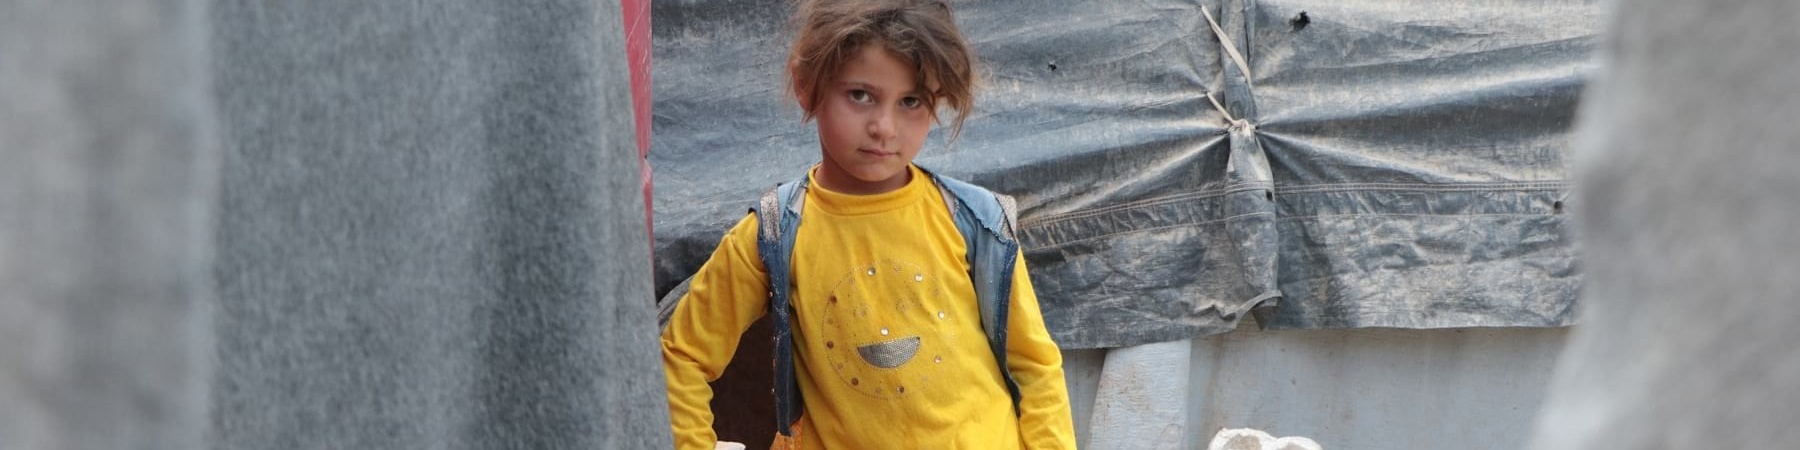 Una bambina vestita di giallo cammina in un campo profughi di cui si vedono alcune parti delle tende e dei rifiuti ingombranti dietro di lei.